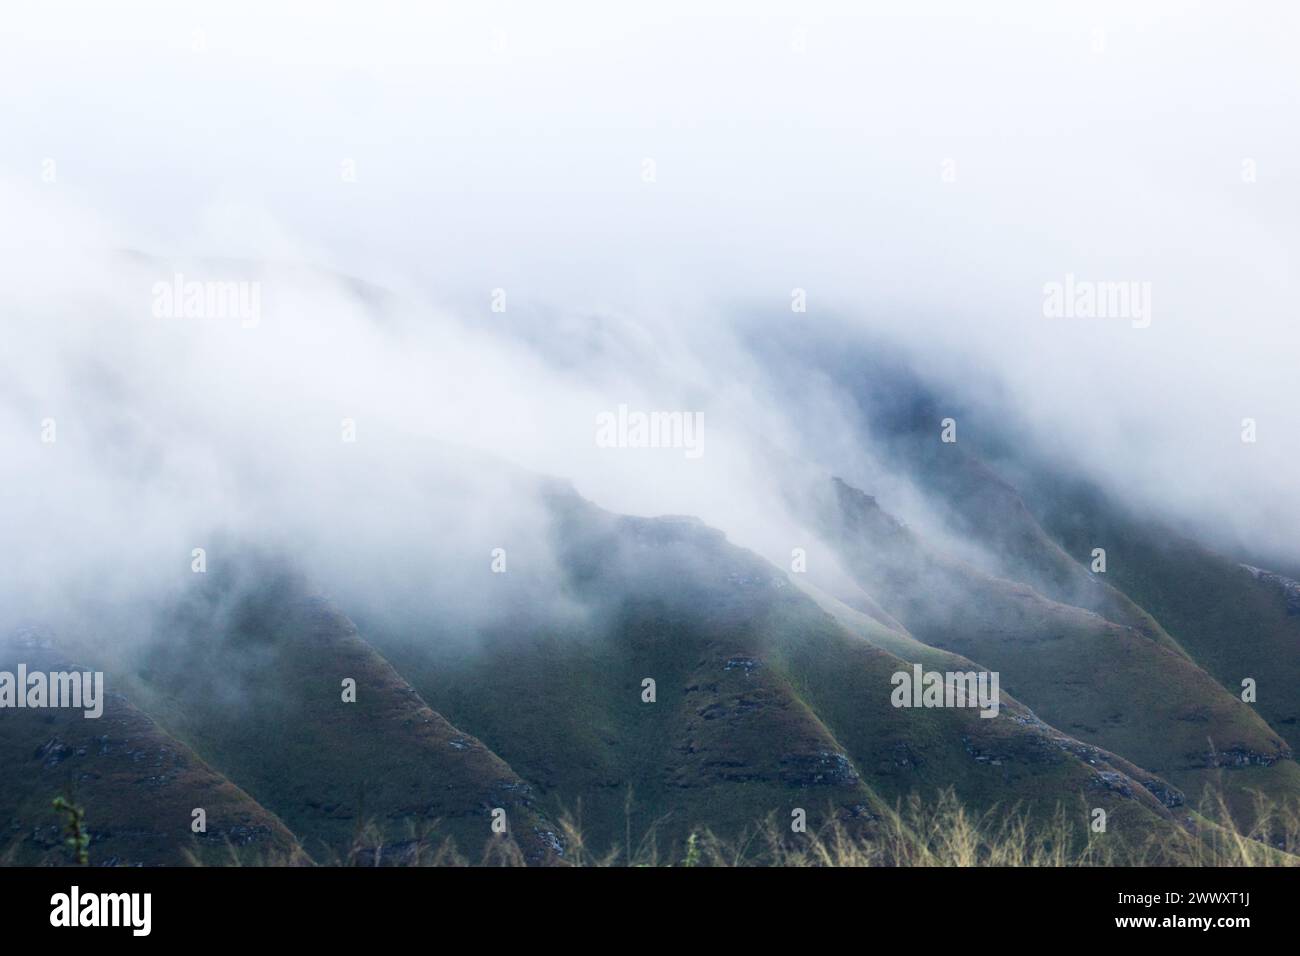 La hierba cubría las crestas y valles de las montañas de Drakensberg en Highmoor, Sudáfrica, oculto por la niebla de la mañana Foto de stock